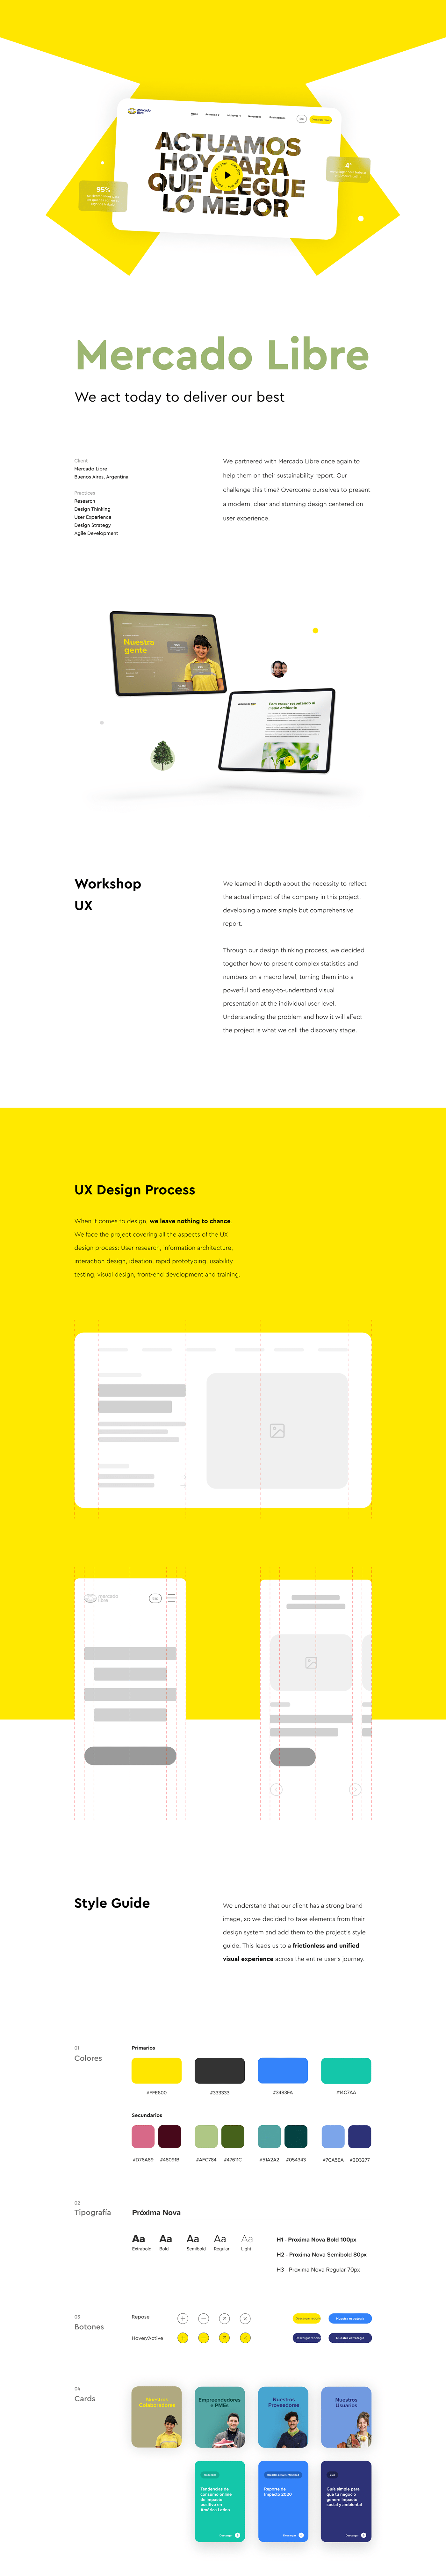 design thinking UI/UX UX design Website